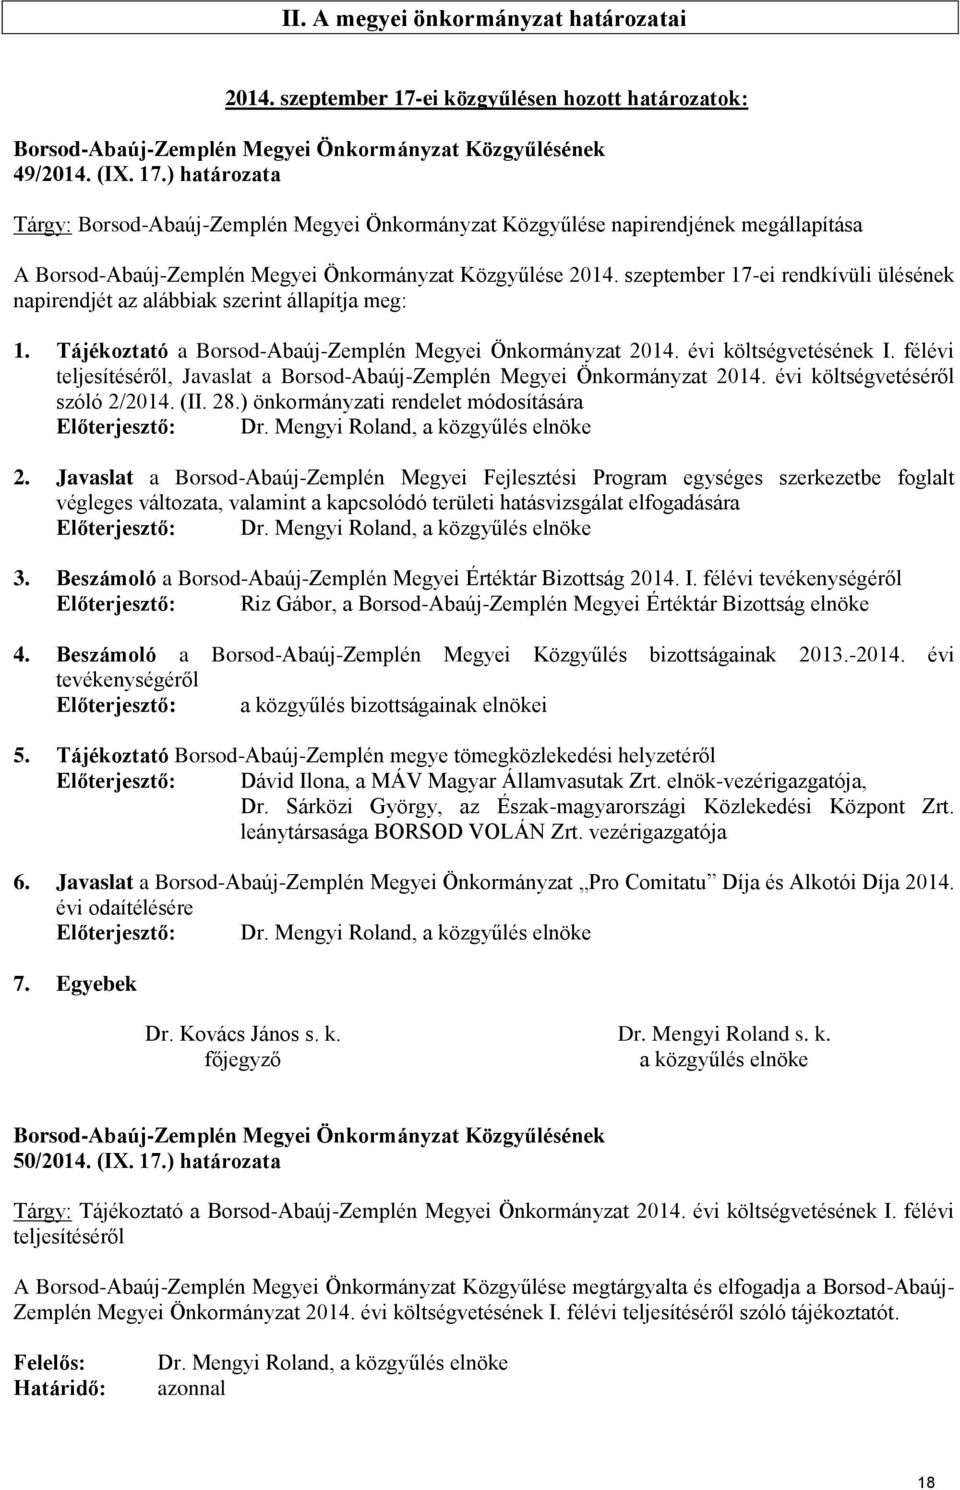 ) határozata Tárgy: Borsod-Abaúj-Zemplén Megyei Önkormányzat Közgyűlése napirendjének megállapítása A Borsod-Abaúj-Zemplén Megyei Önkormányzat Közgyűlése 2014.